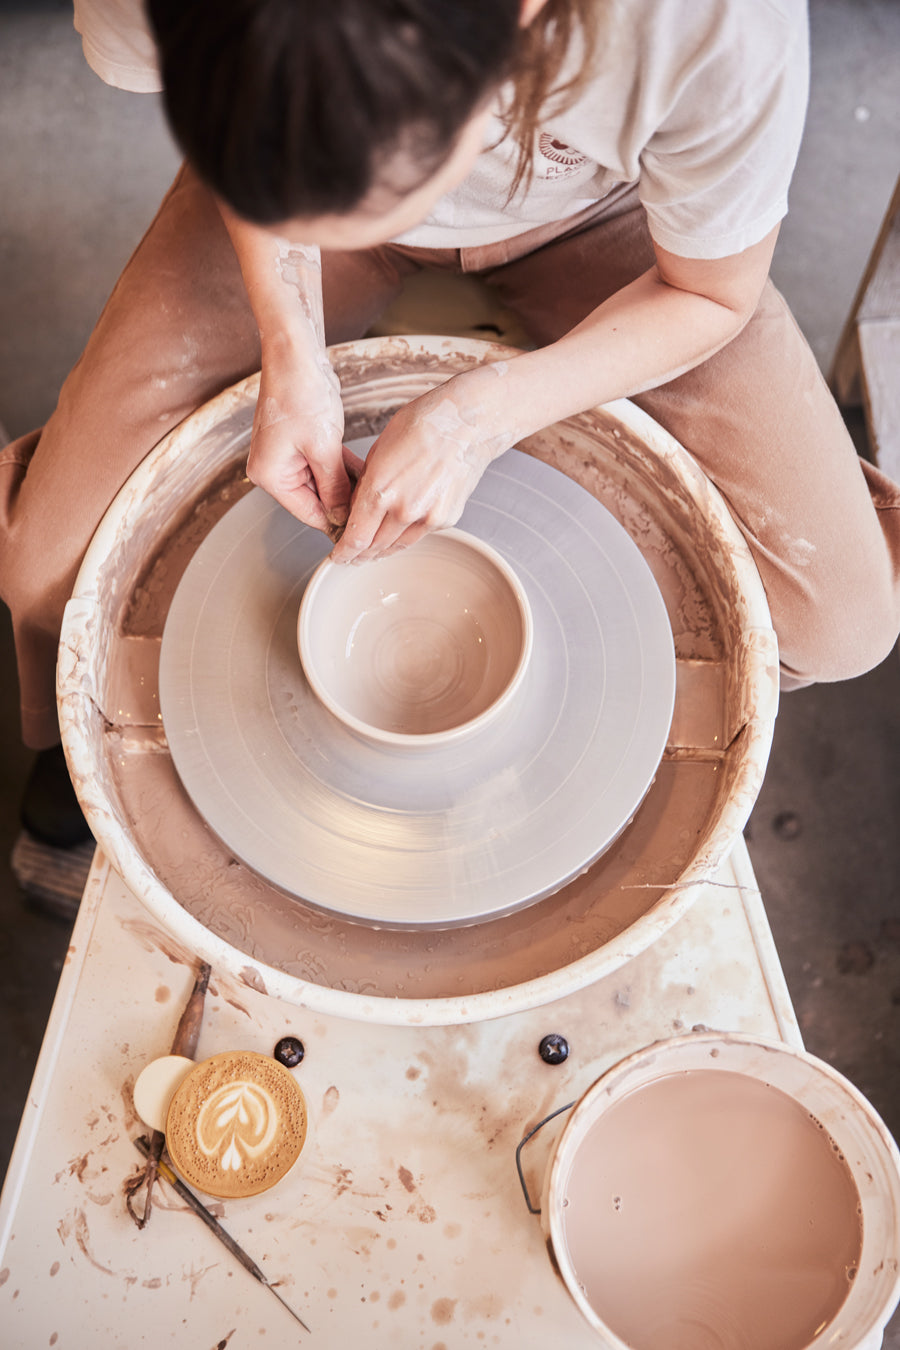 Vue de haut d'une personne qui fait de la poterie avec un café